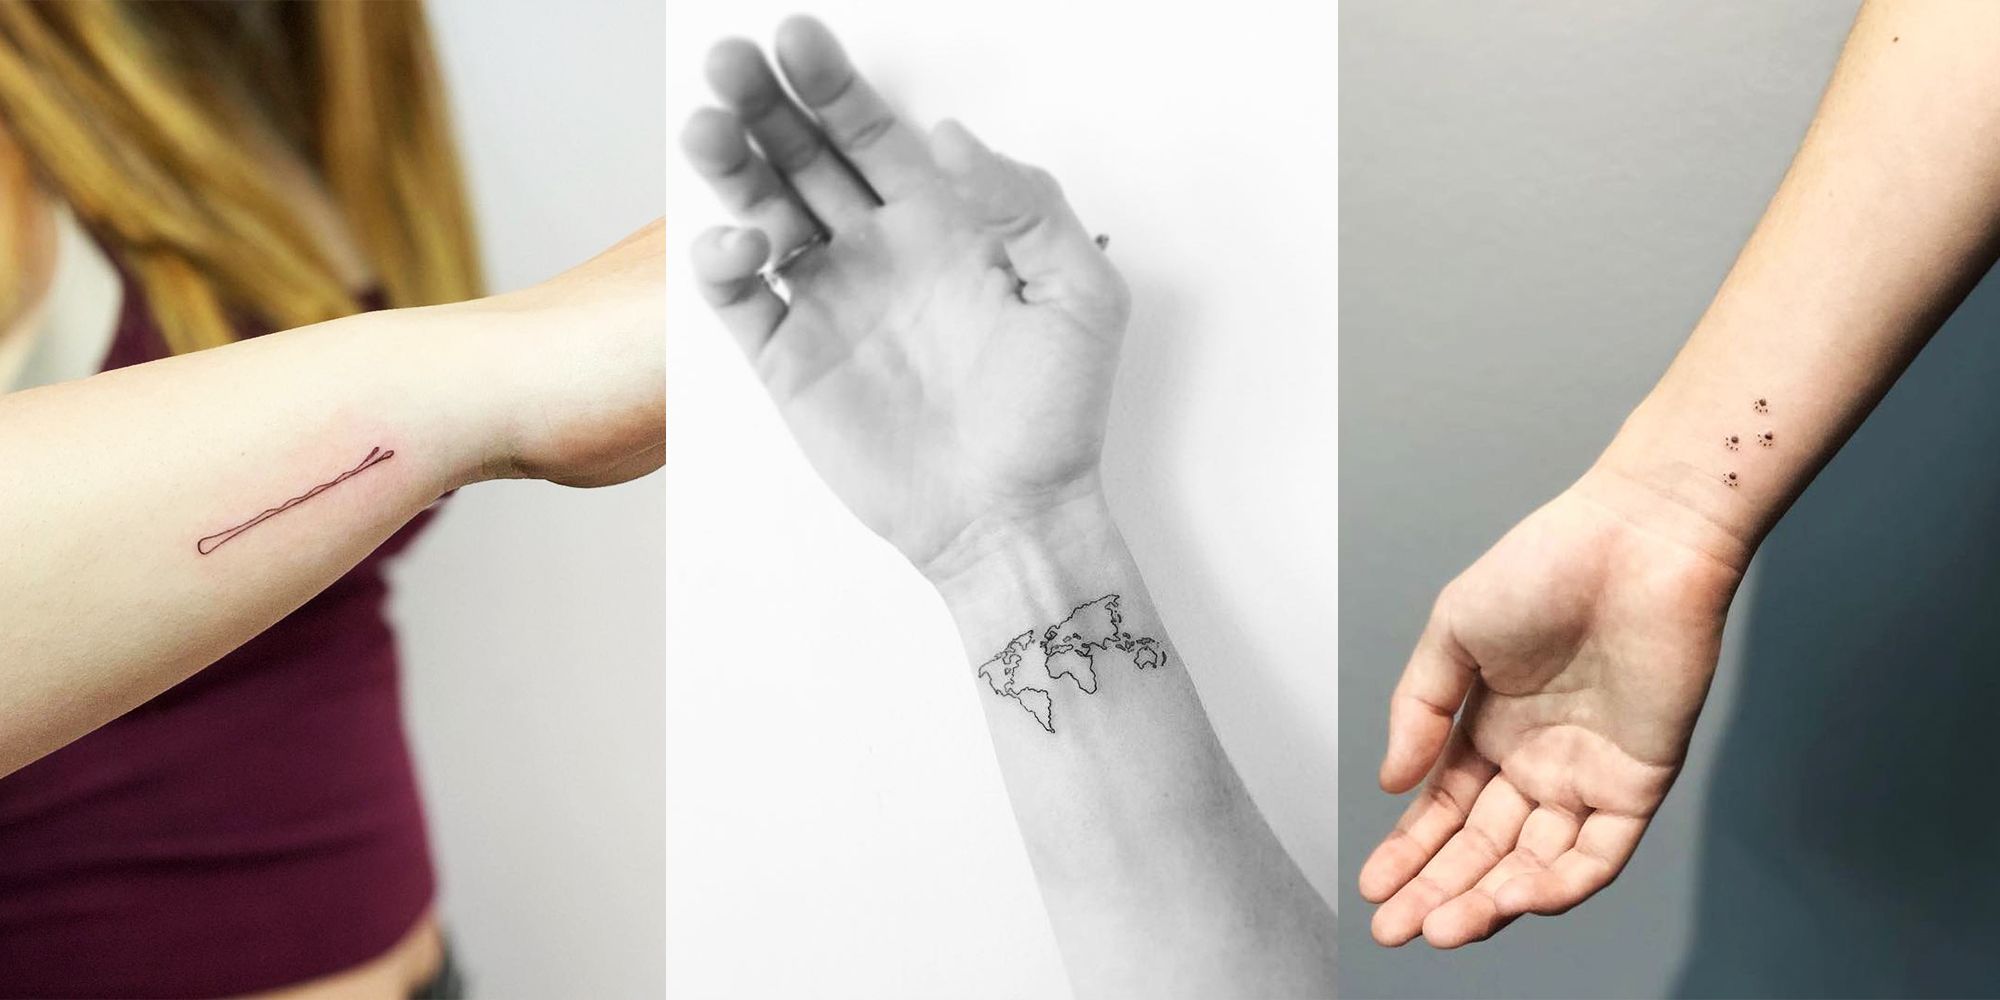 20 Best and Cutest Wrist Tattoo Ideas to Copy  Small Tattoo Designs